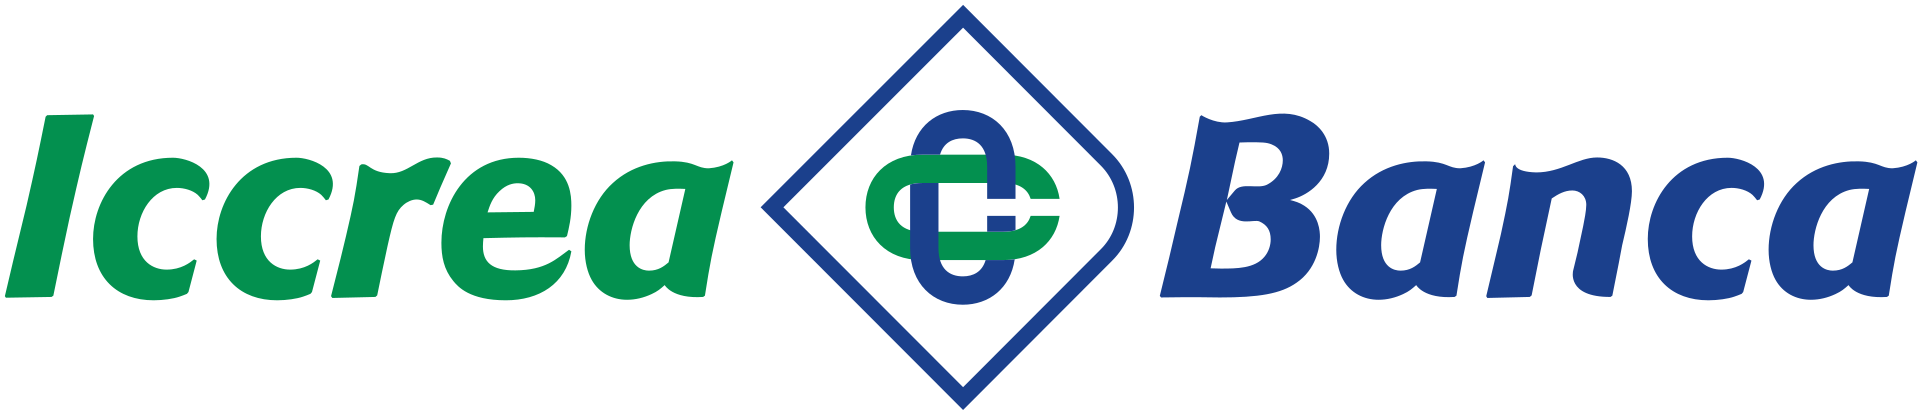 Iccrea Banca Brand Logo